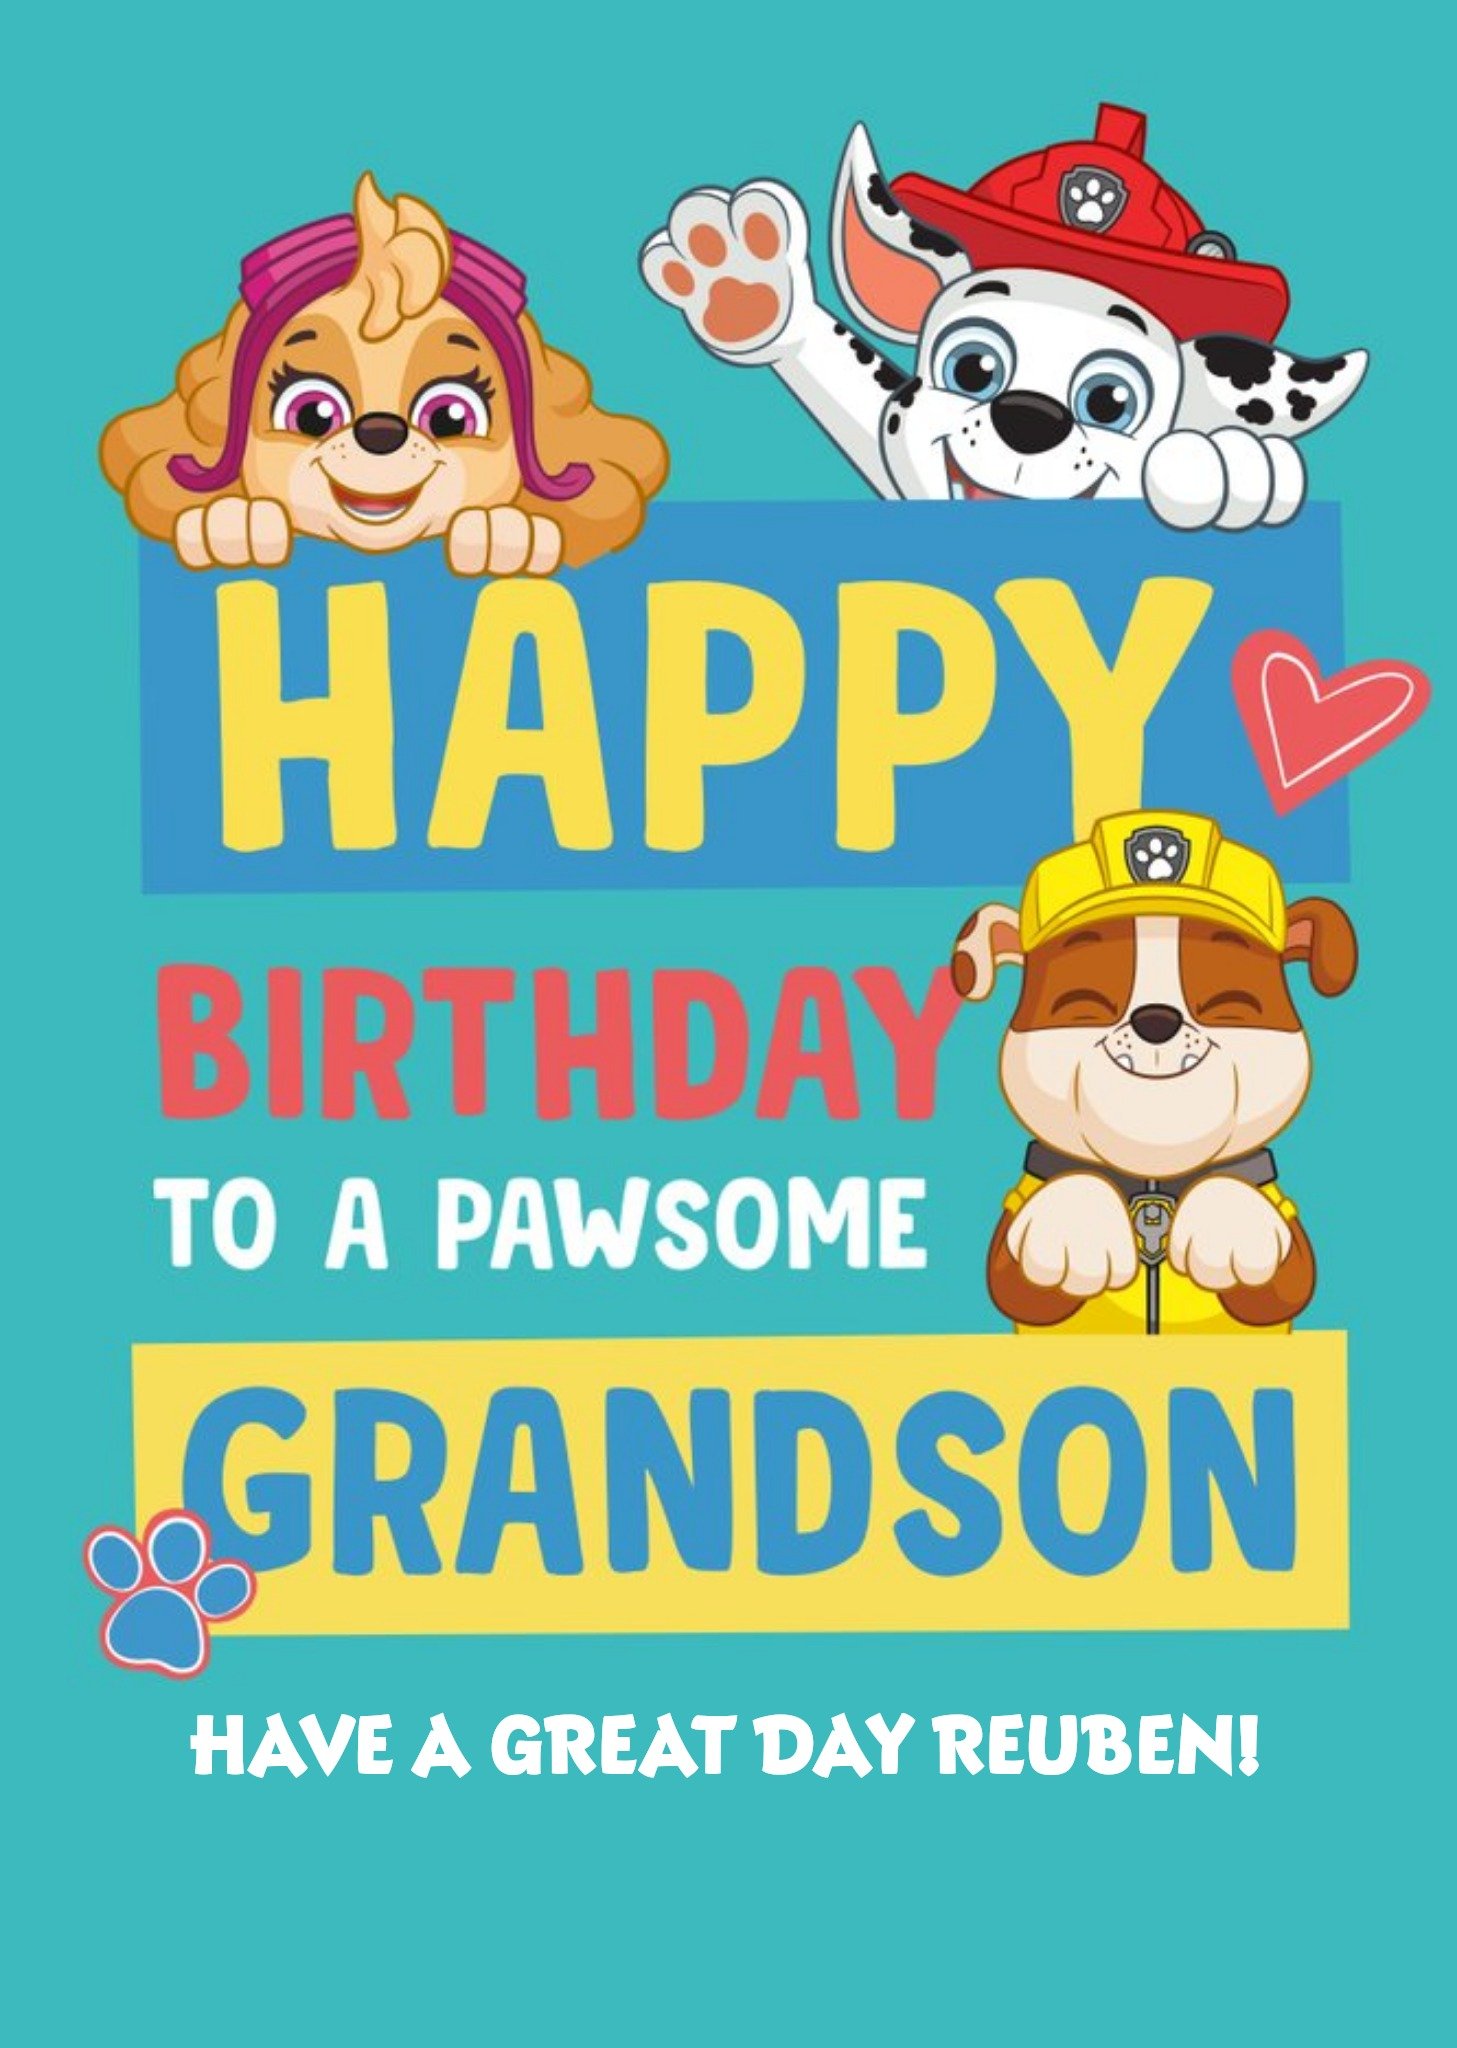 Paw Patrol Pawsome Grandson Birthday Card Ecard